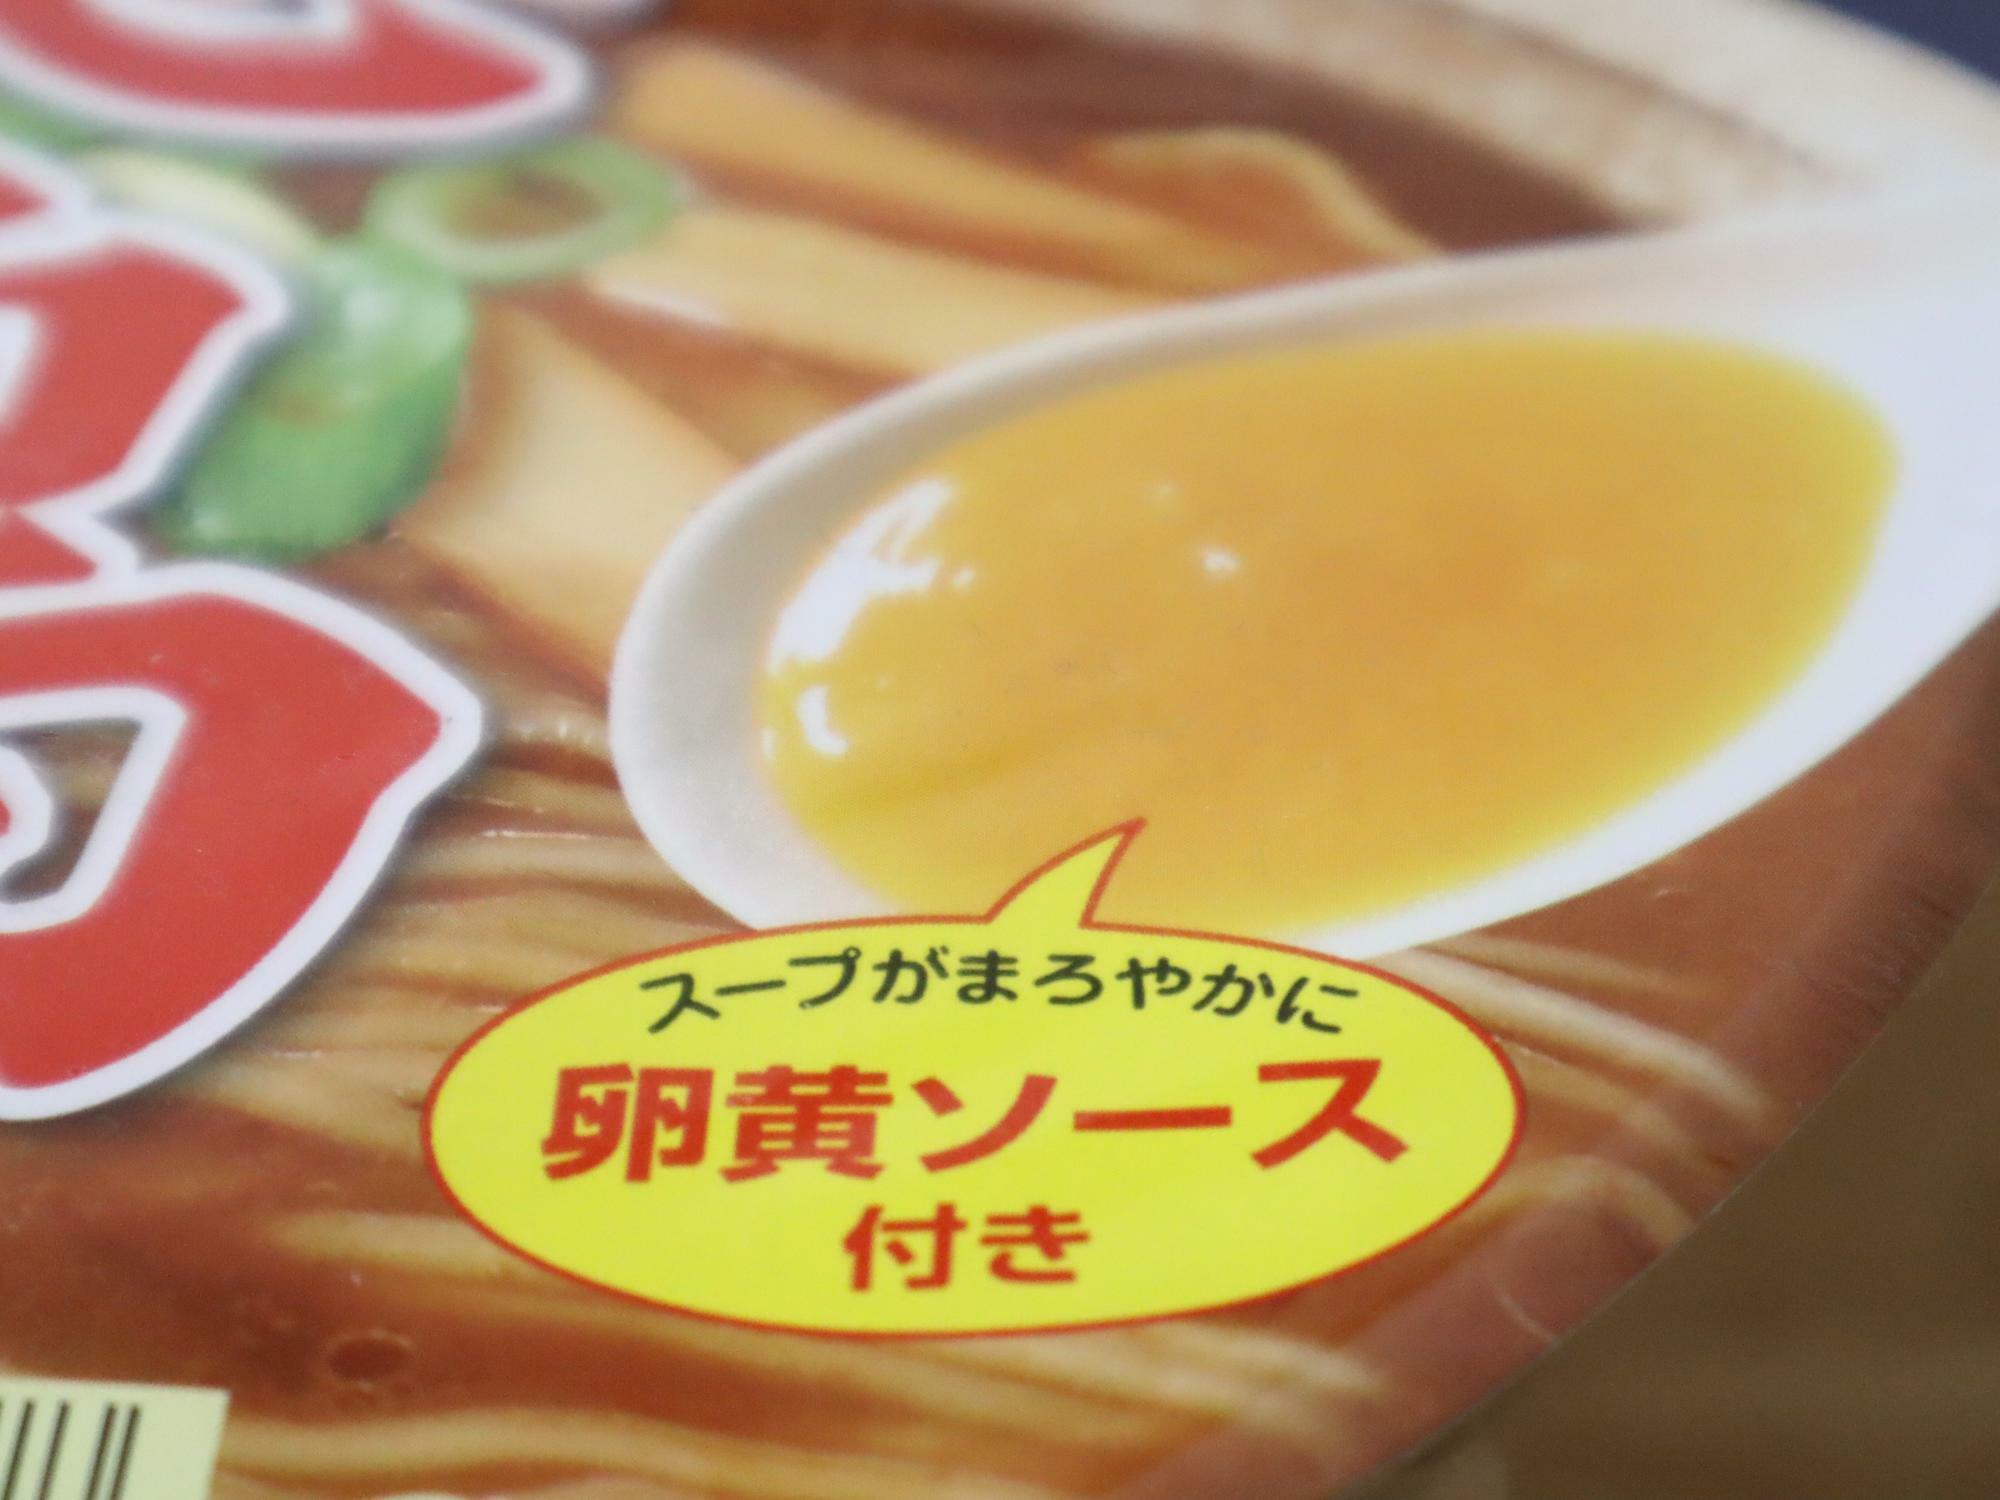 「ヤマダイ株式会社」のニュータッチ 凄麺 「徳島ラーメン濃厚醤油とんこつ味」。